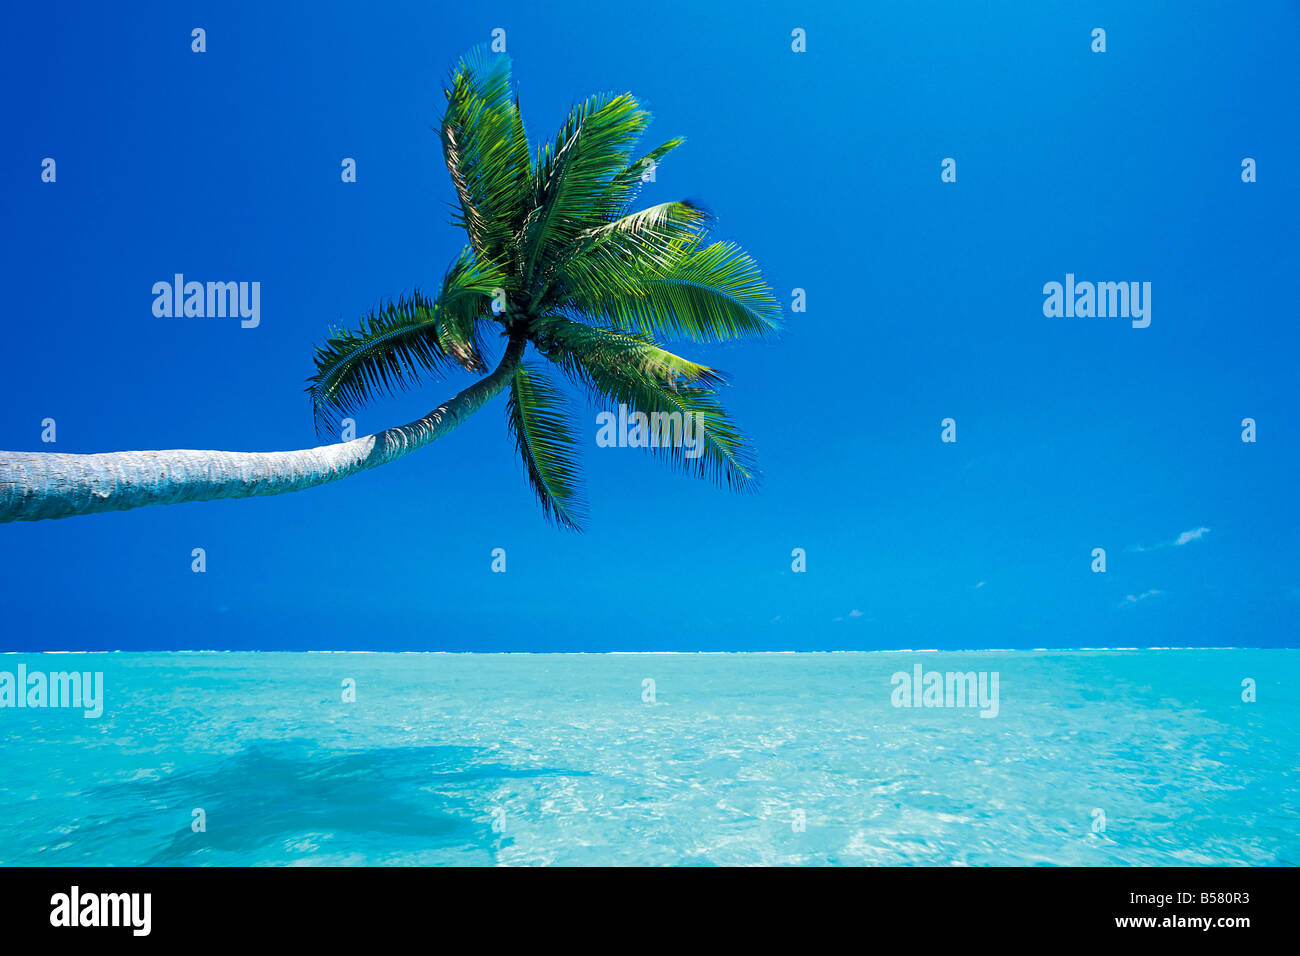 Palmier surplombant la mer, Male Atoll, Maldives, océan Indien, Asie Banque D'Images